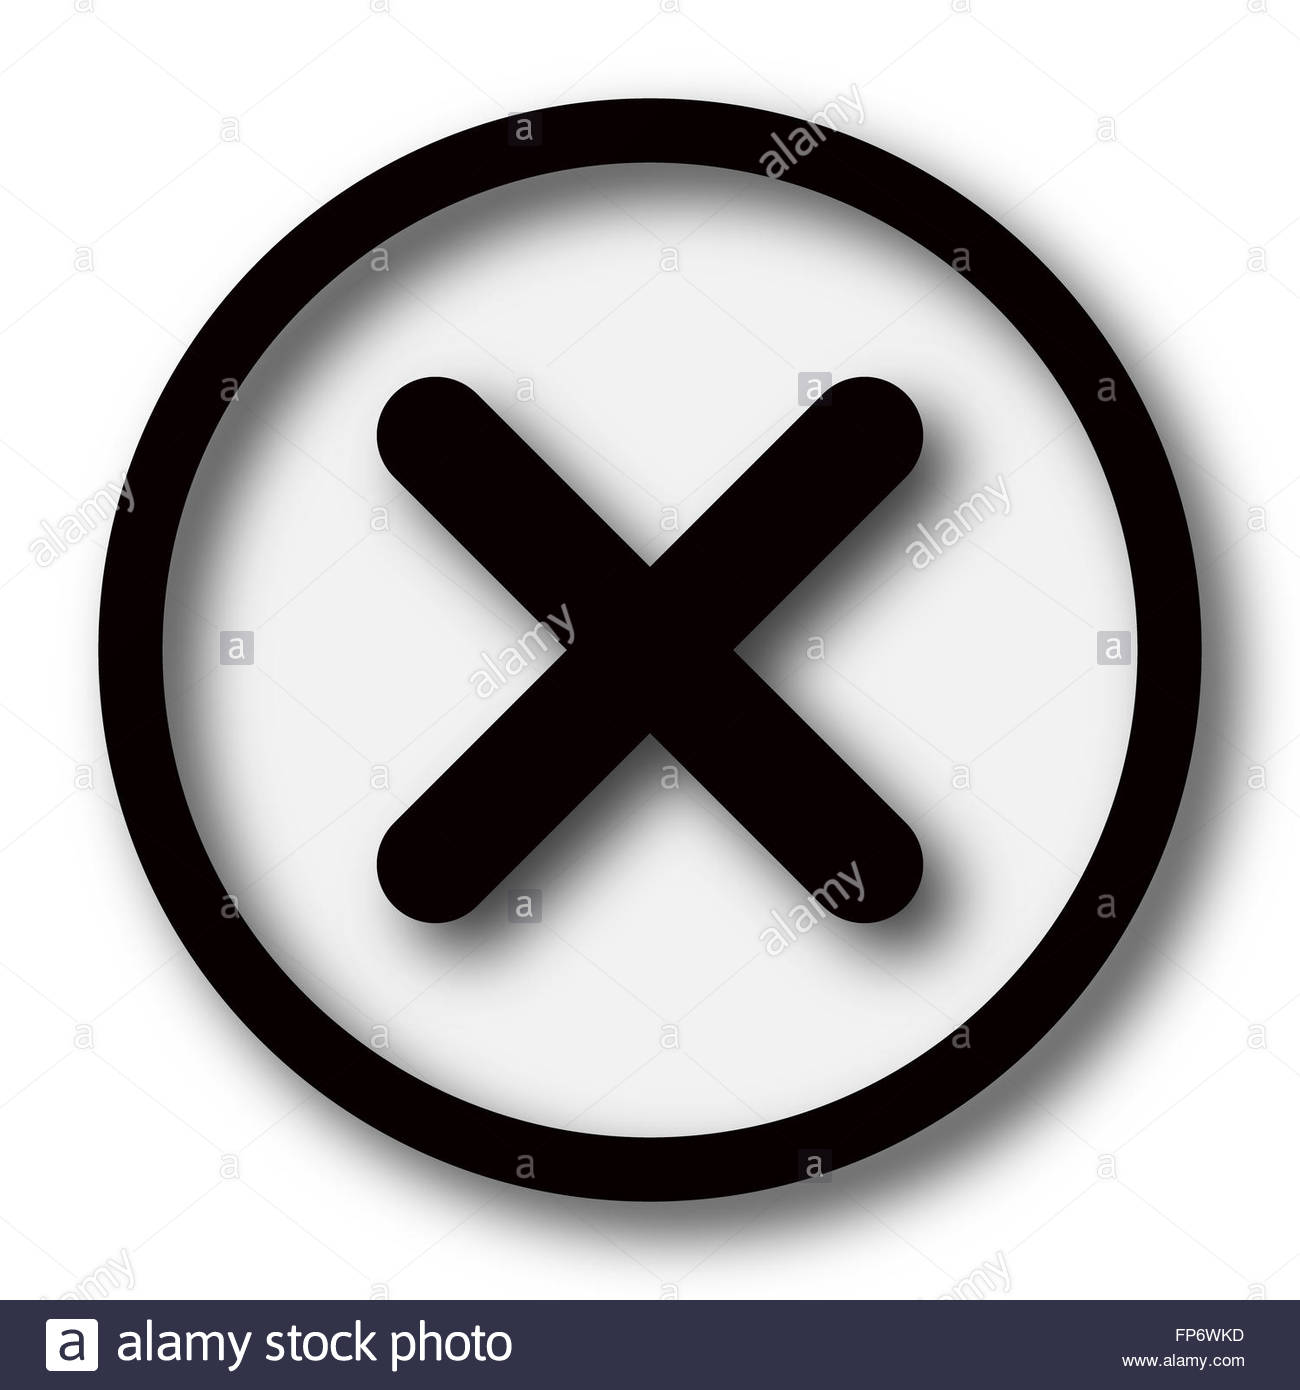 Cancel, close, delete, error, exit, invalid, remove, x icon | Icon 